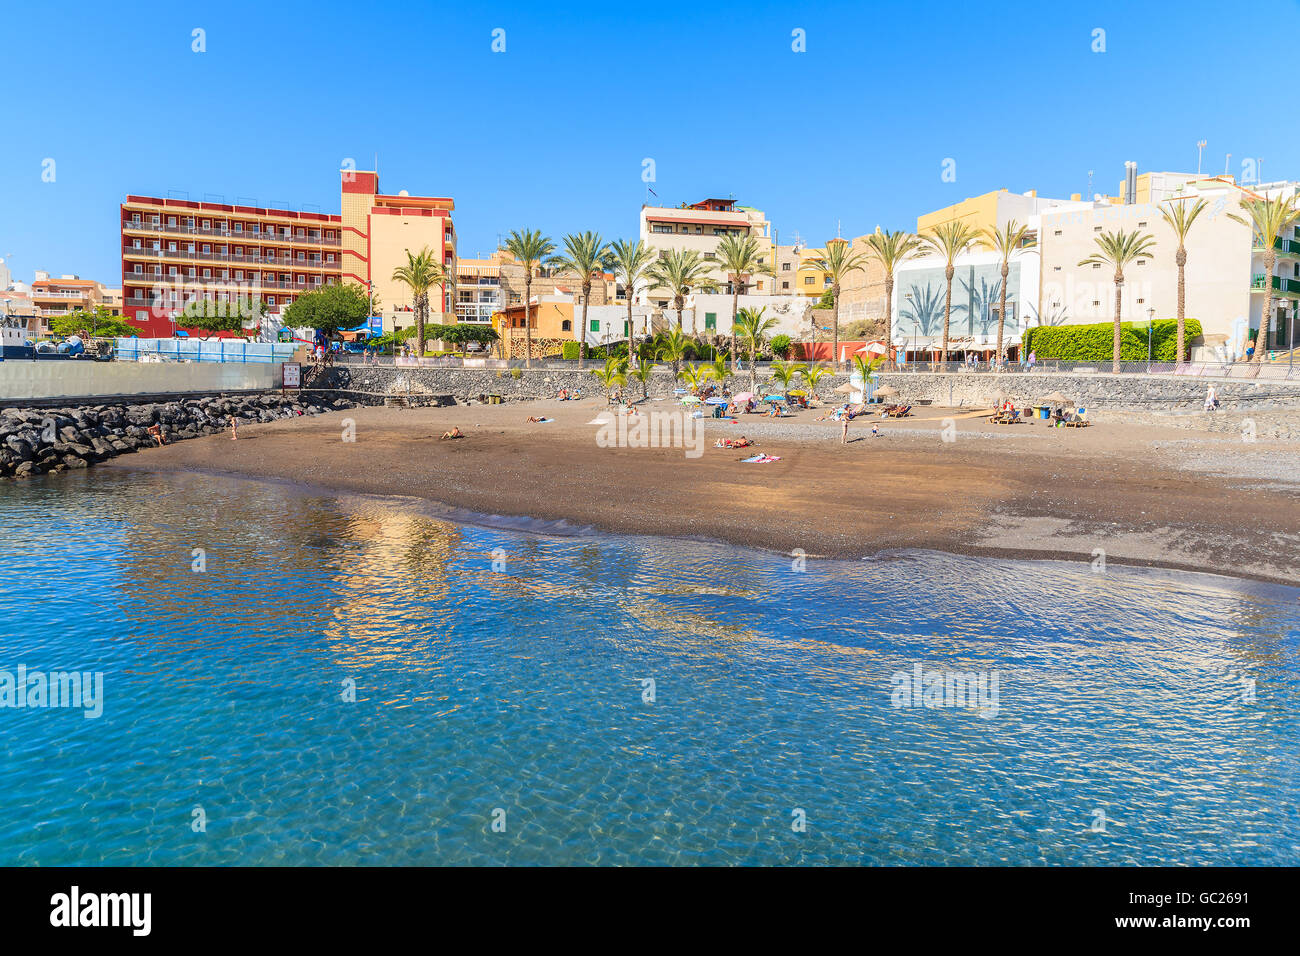 Spiaggia di San Juan, TENERIFE ISLAND - Nov 18, 2015: spiaggia di San Juan town. Si tratta di un piccolo porto di pesca a sud di Tenerife, Canarie Foto Stock